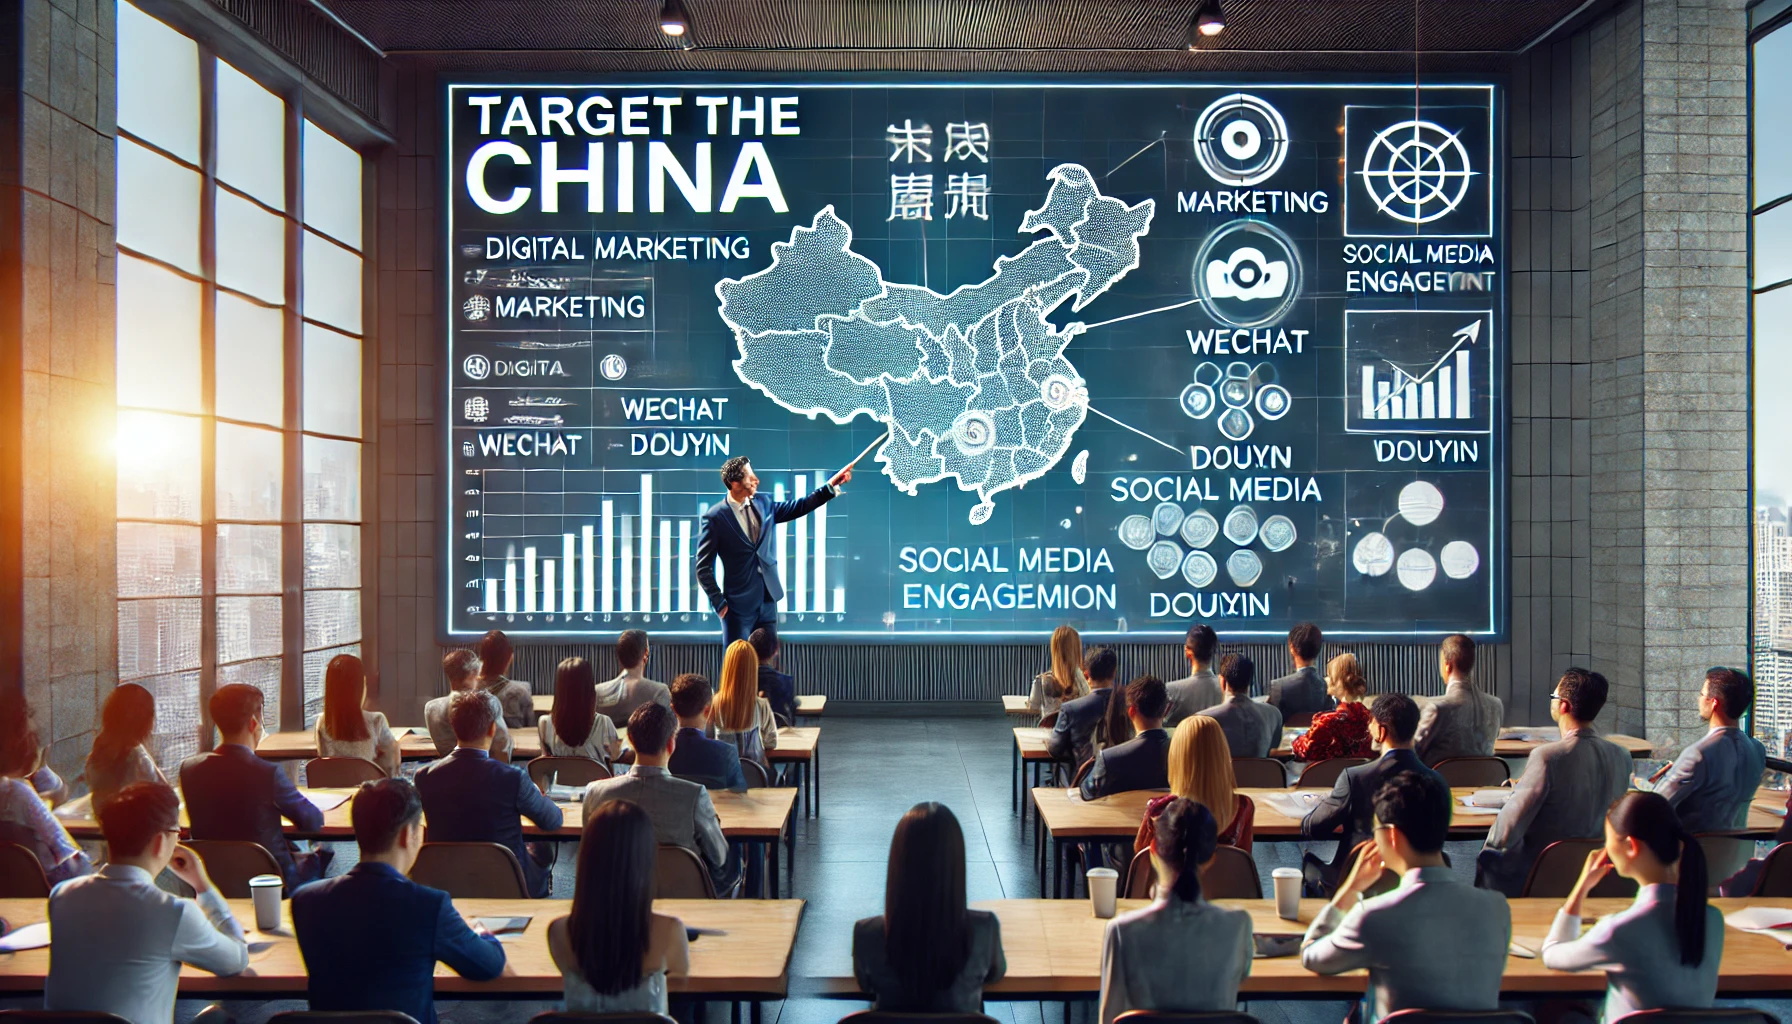 Développer une stratégie marketing adaptée à votre cible Chinoise